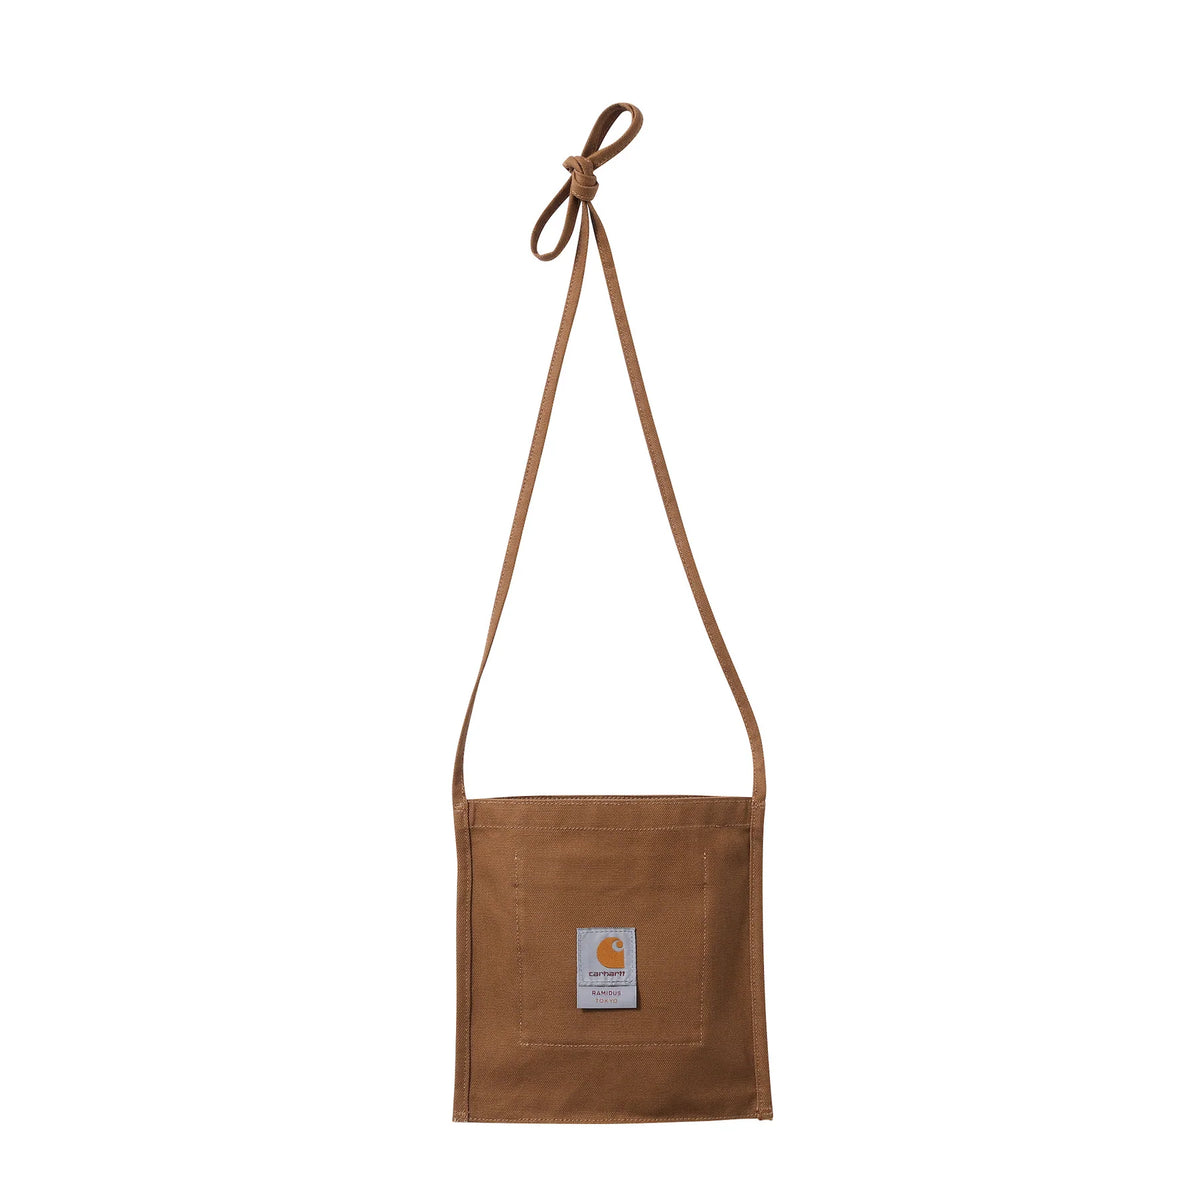 BAPE Shoulder Bag – BBIC Deals